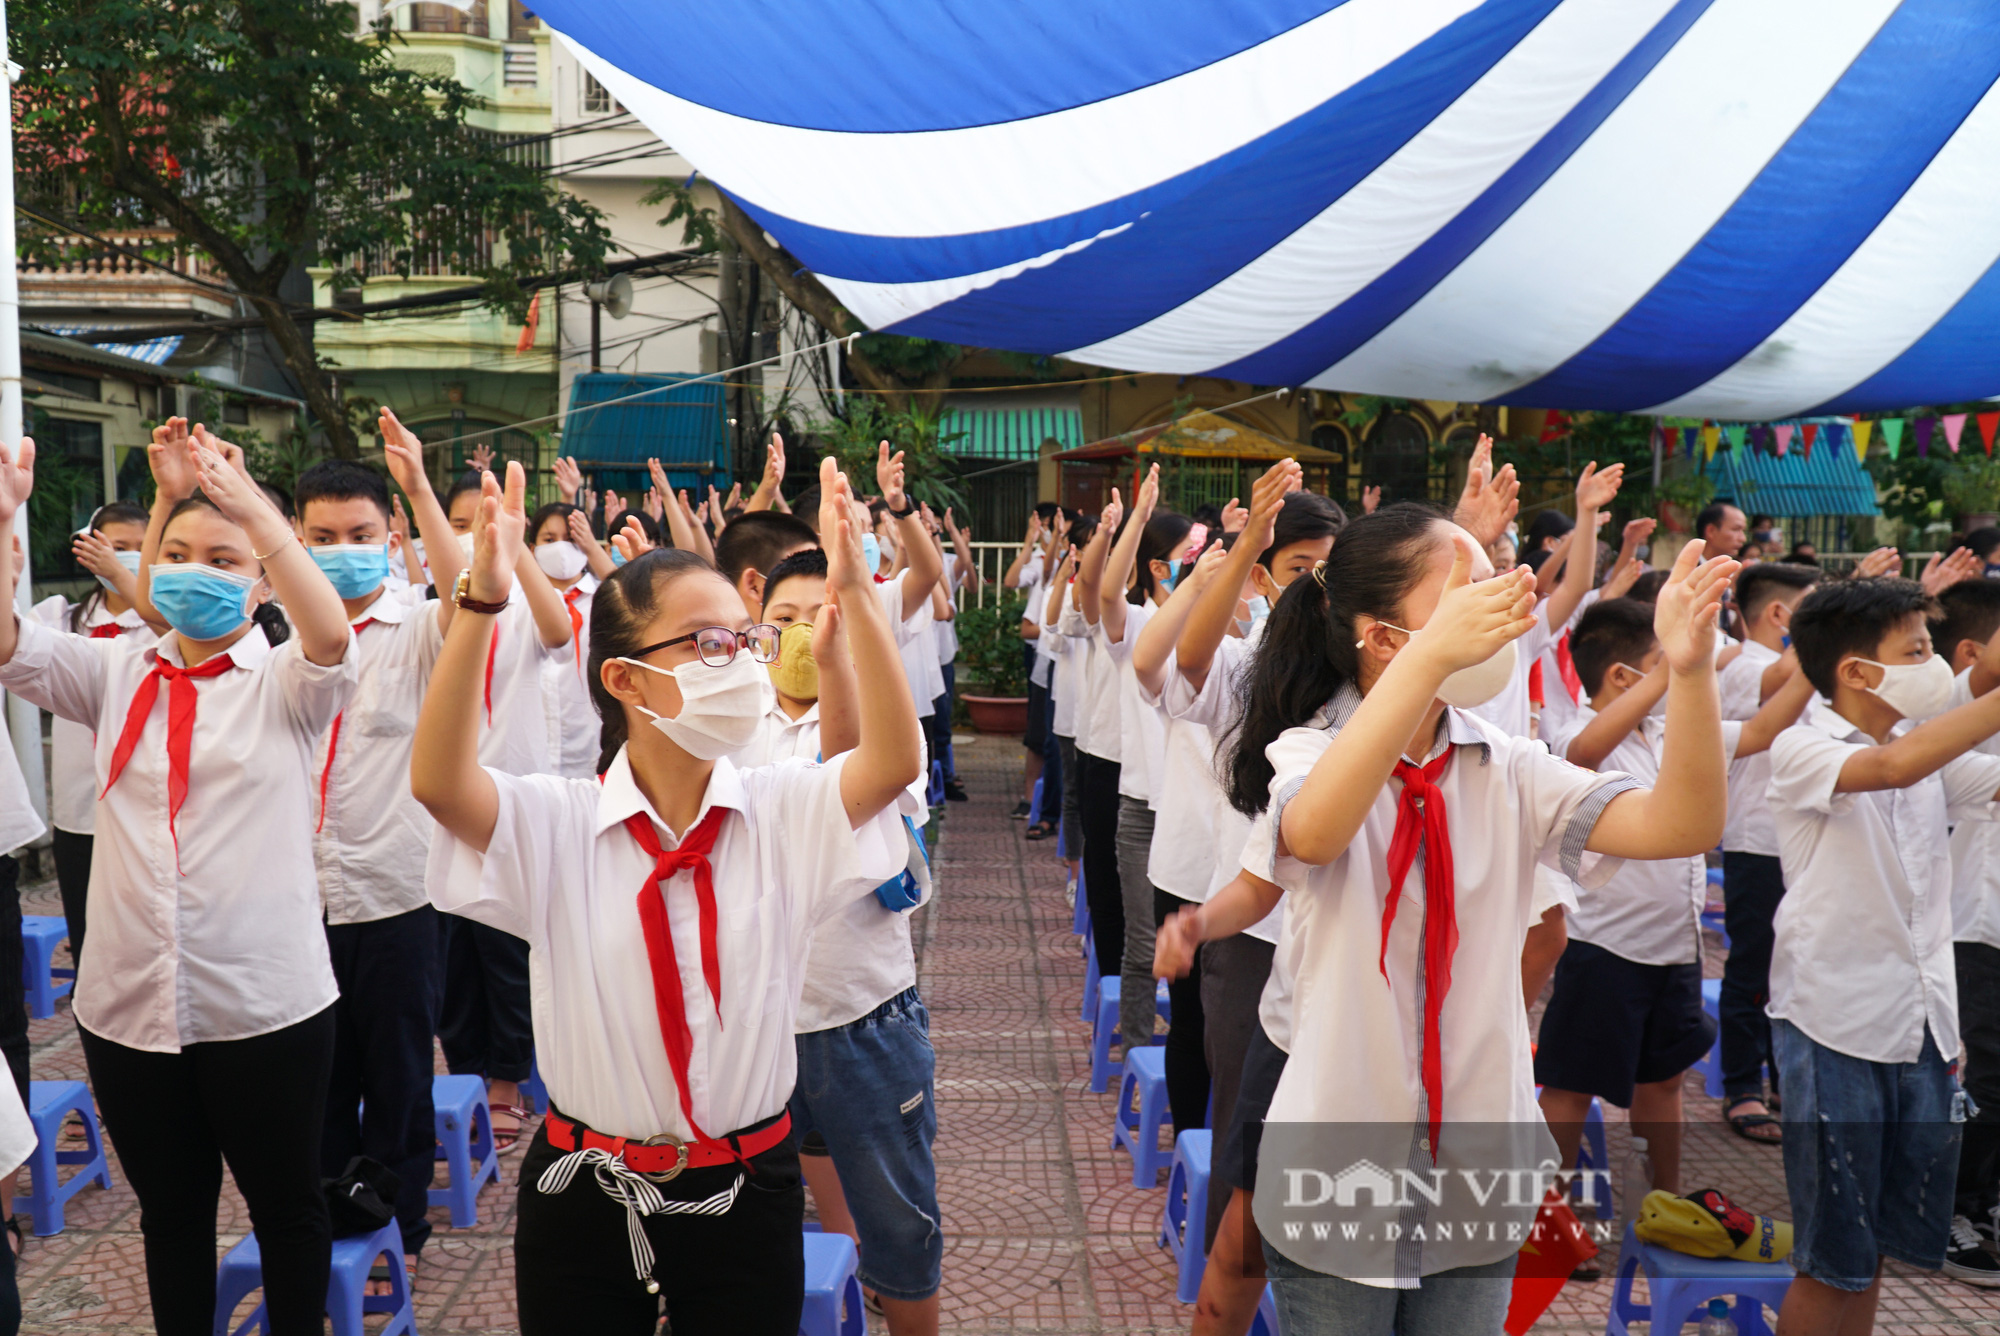 Lễ khai giảng đặc biệt của ngôi trường hát quốc ca bằng ký hiệu tại Hà Nội - Ảnh 5.